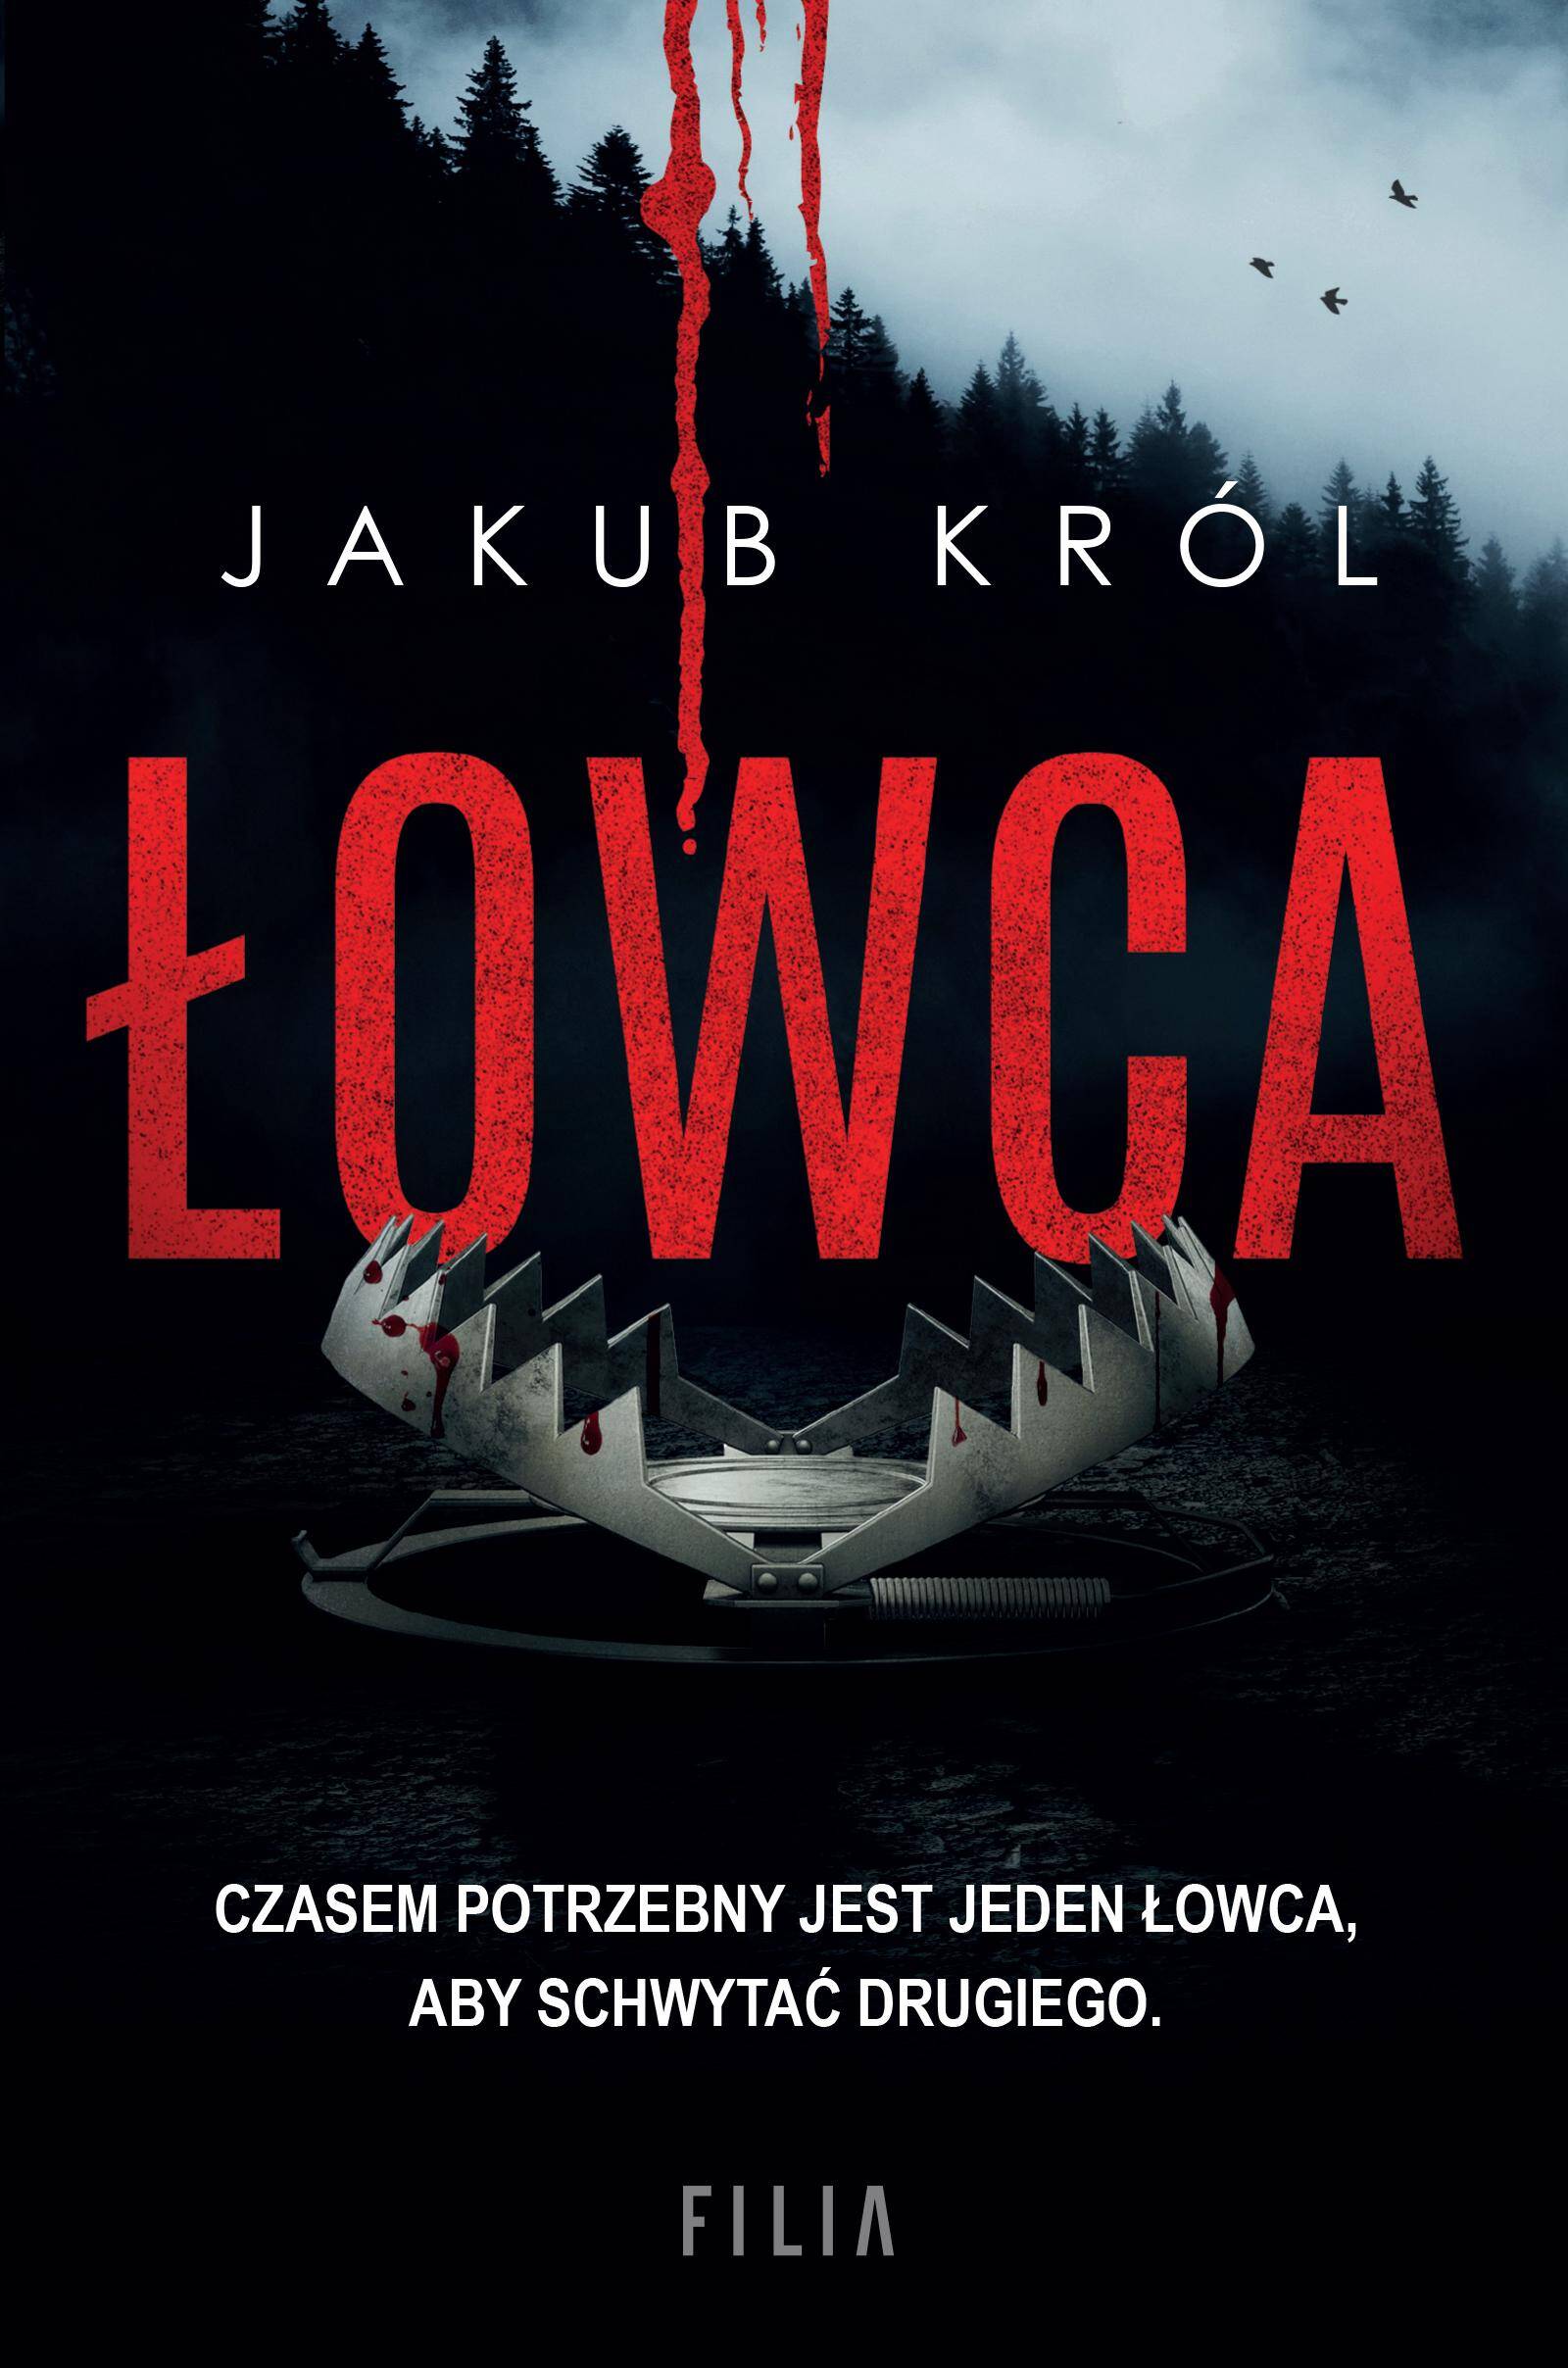 Łowca/Jakub Król